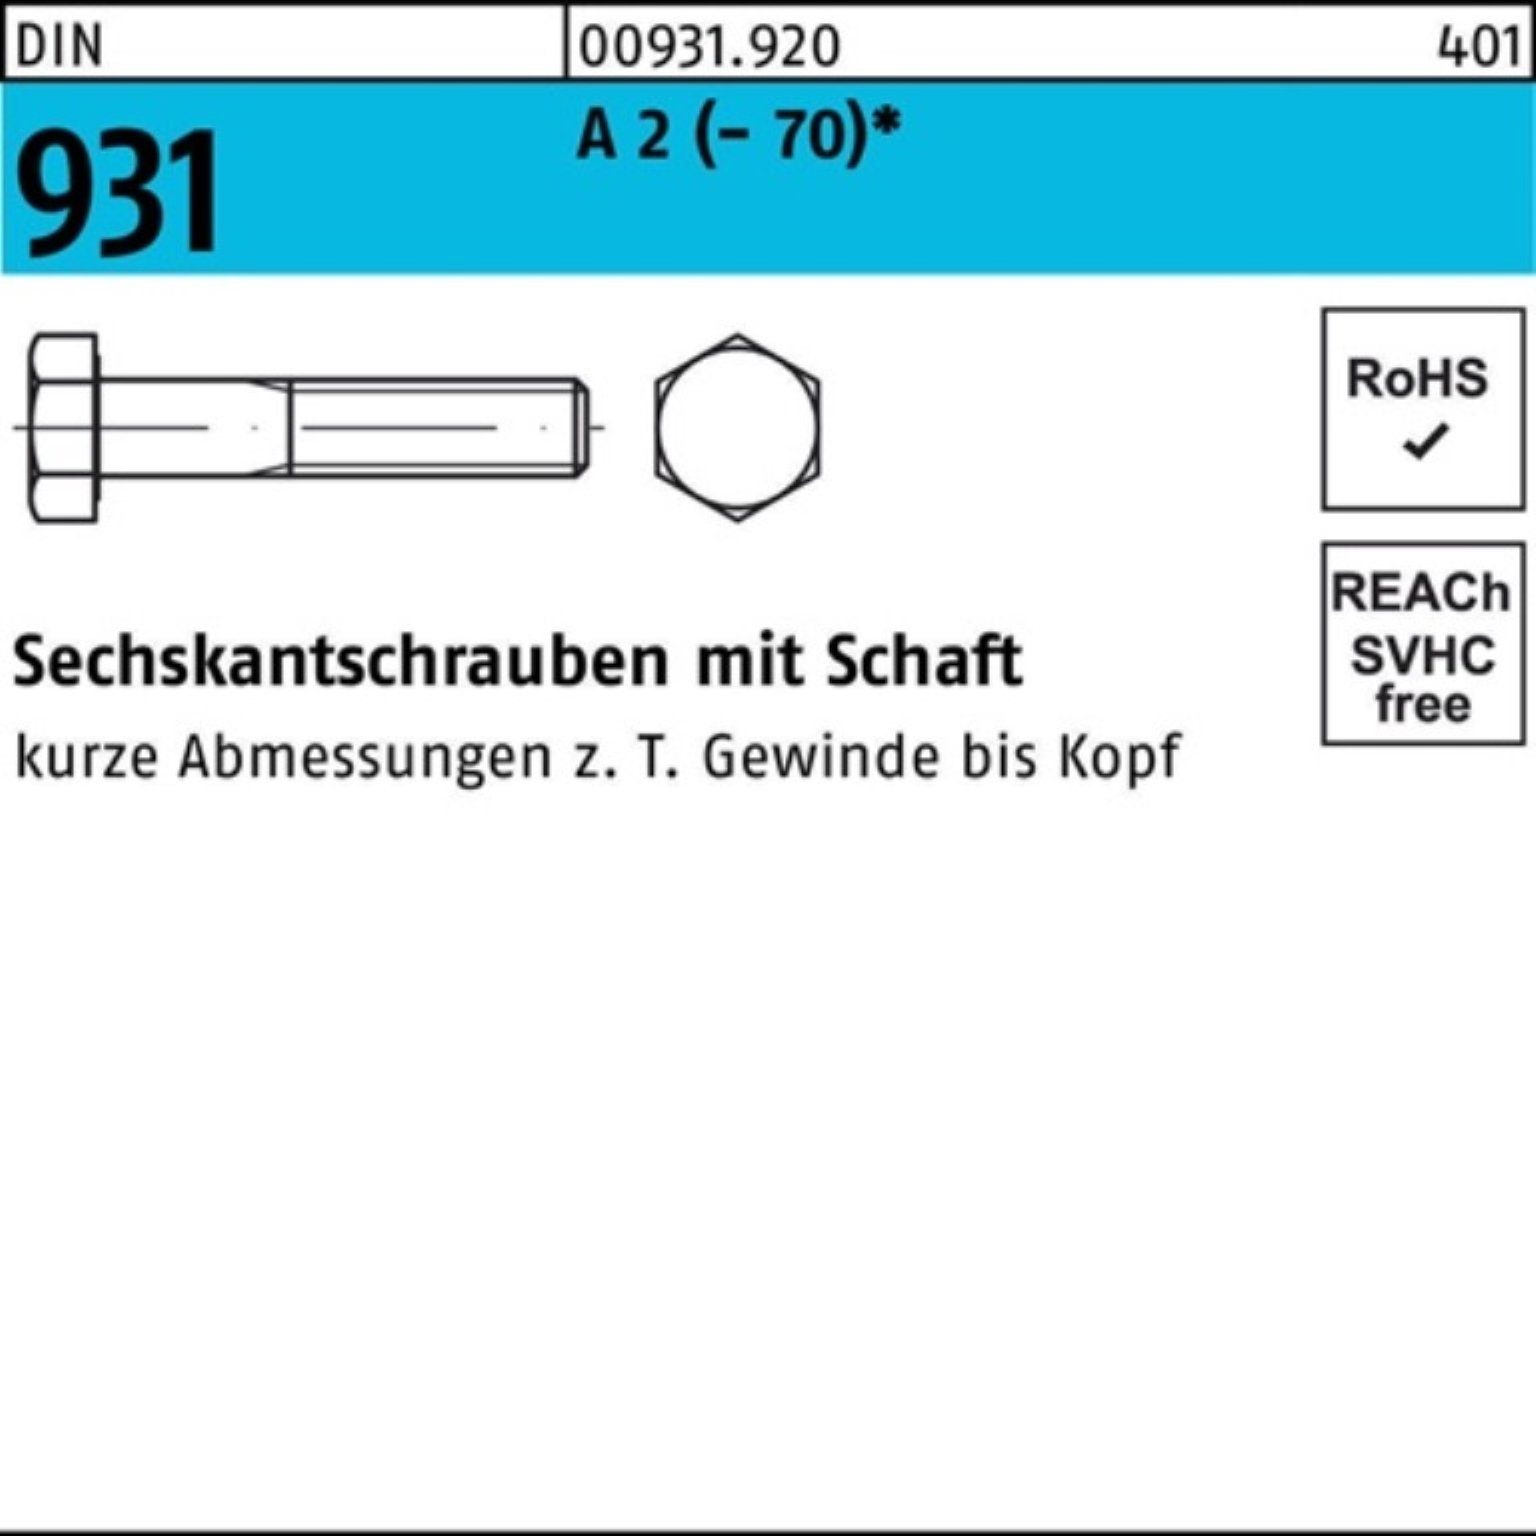 Reyher Sechskantschraube (70) 931 DIN Pack Stü 1 2 A 200 Schaft M30x 100er Sechskantschraube